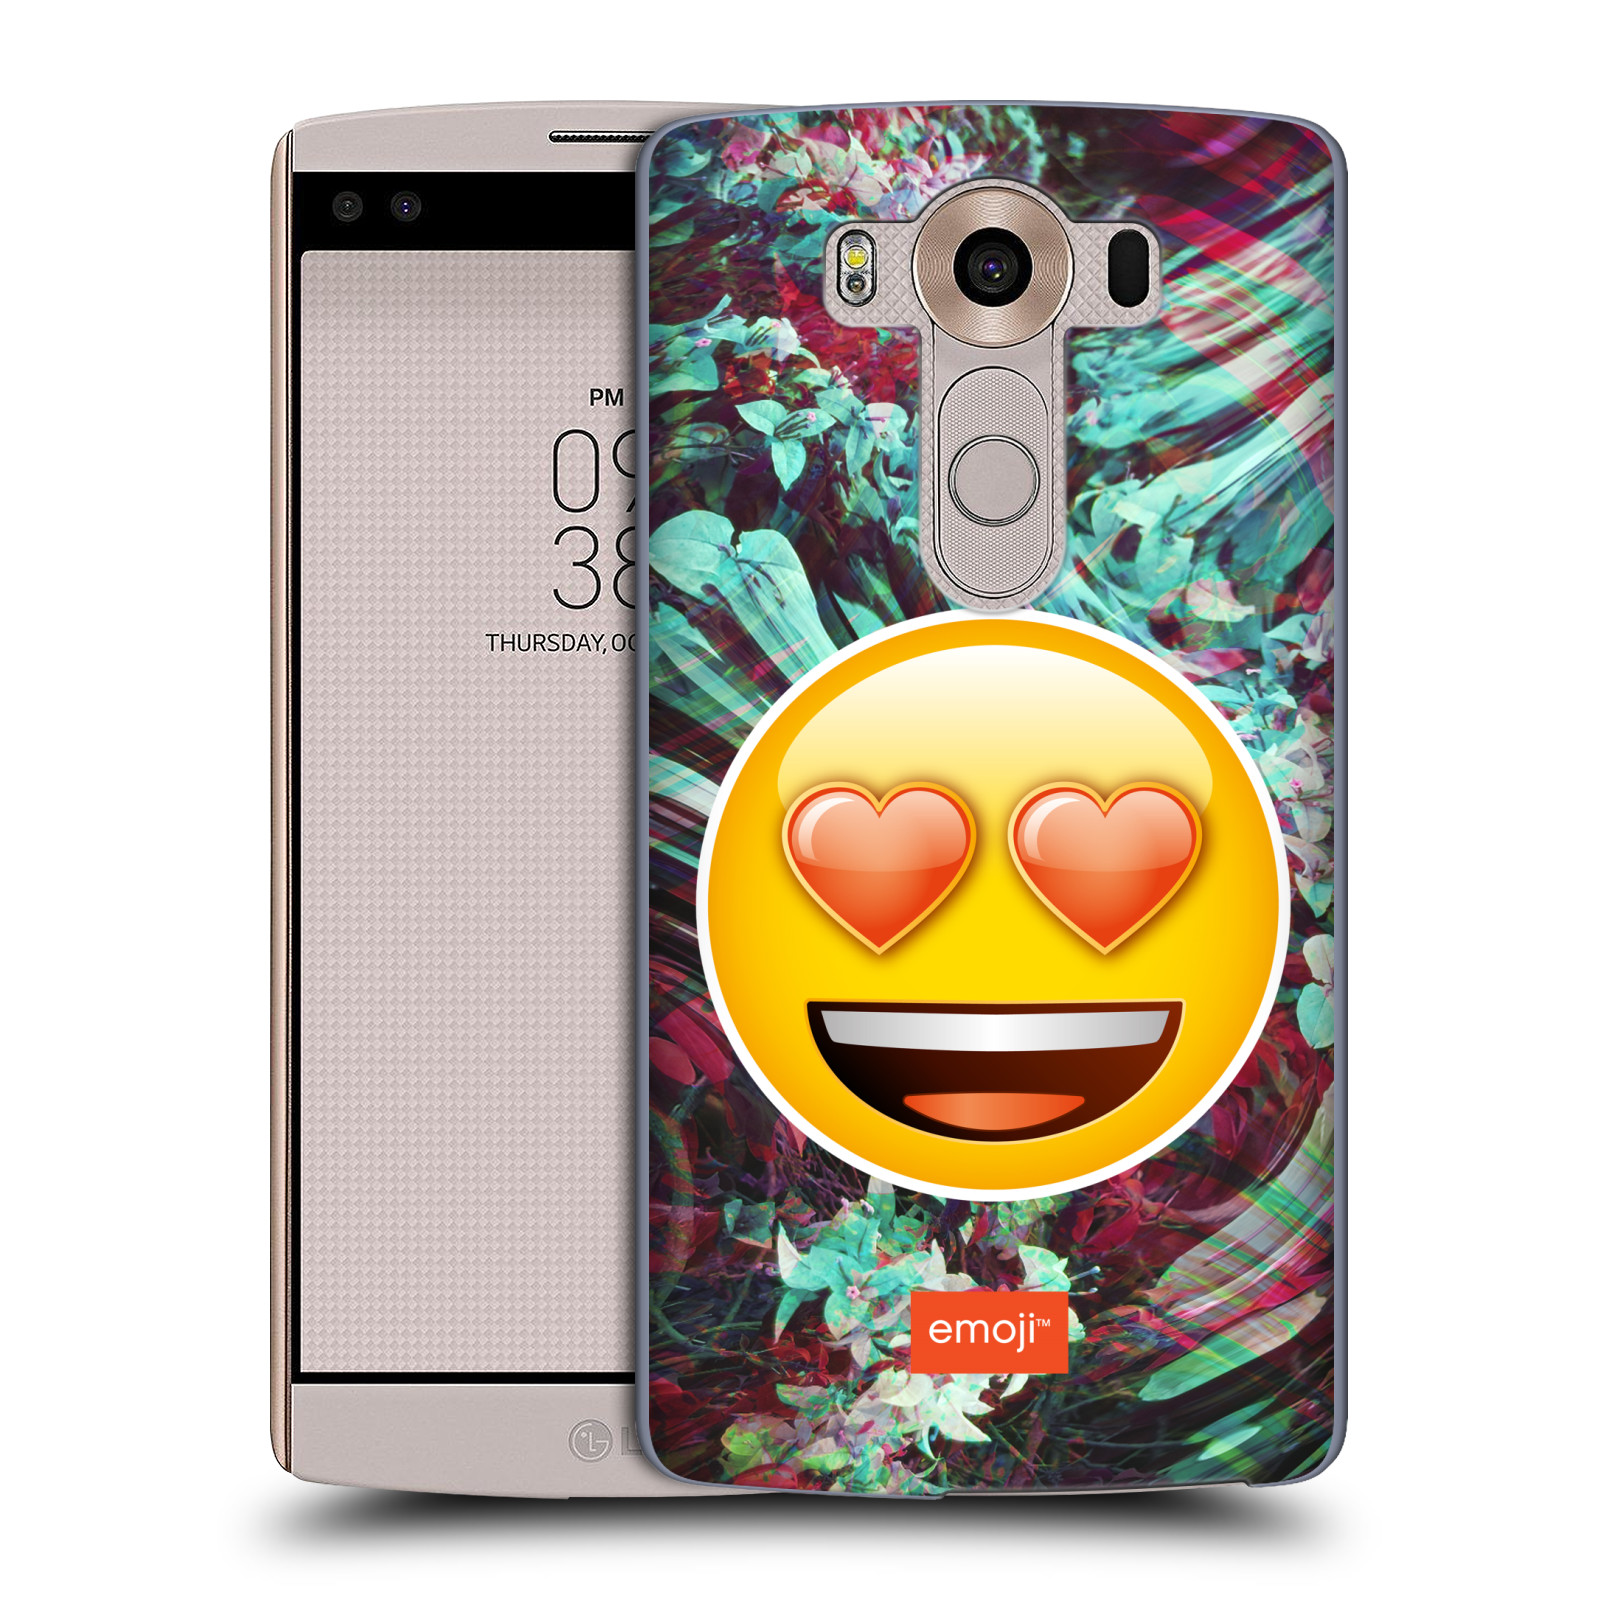 Pouzdro na mobil LG V10 - HEAD CASE - Emoji smajlík srdíčka v očích